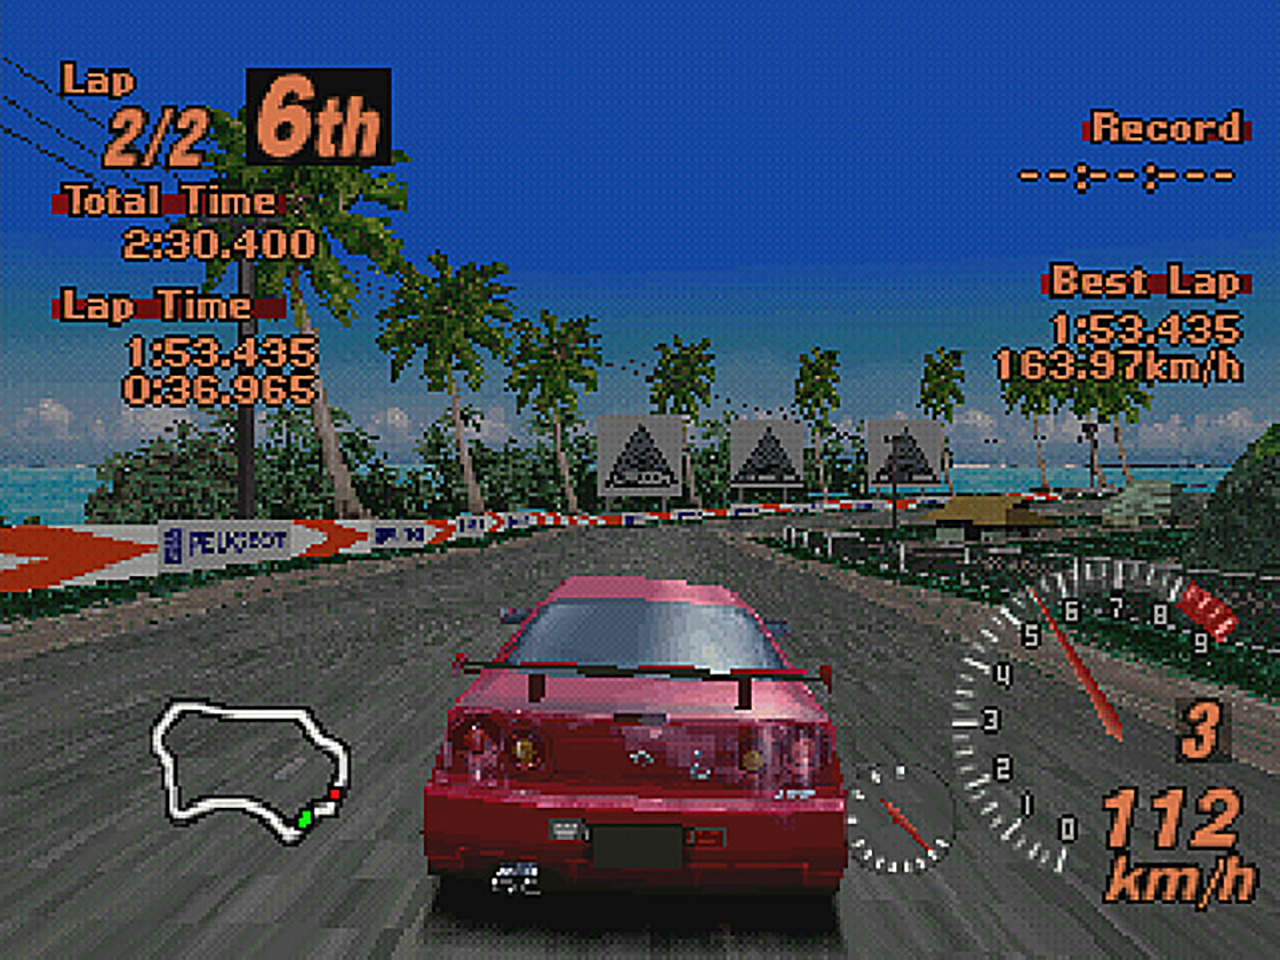 [NOSTALGIE] Gran Turismo 2 (Playstation) I1lLlYH5UO0B3RH